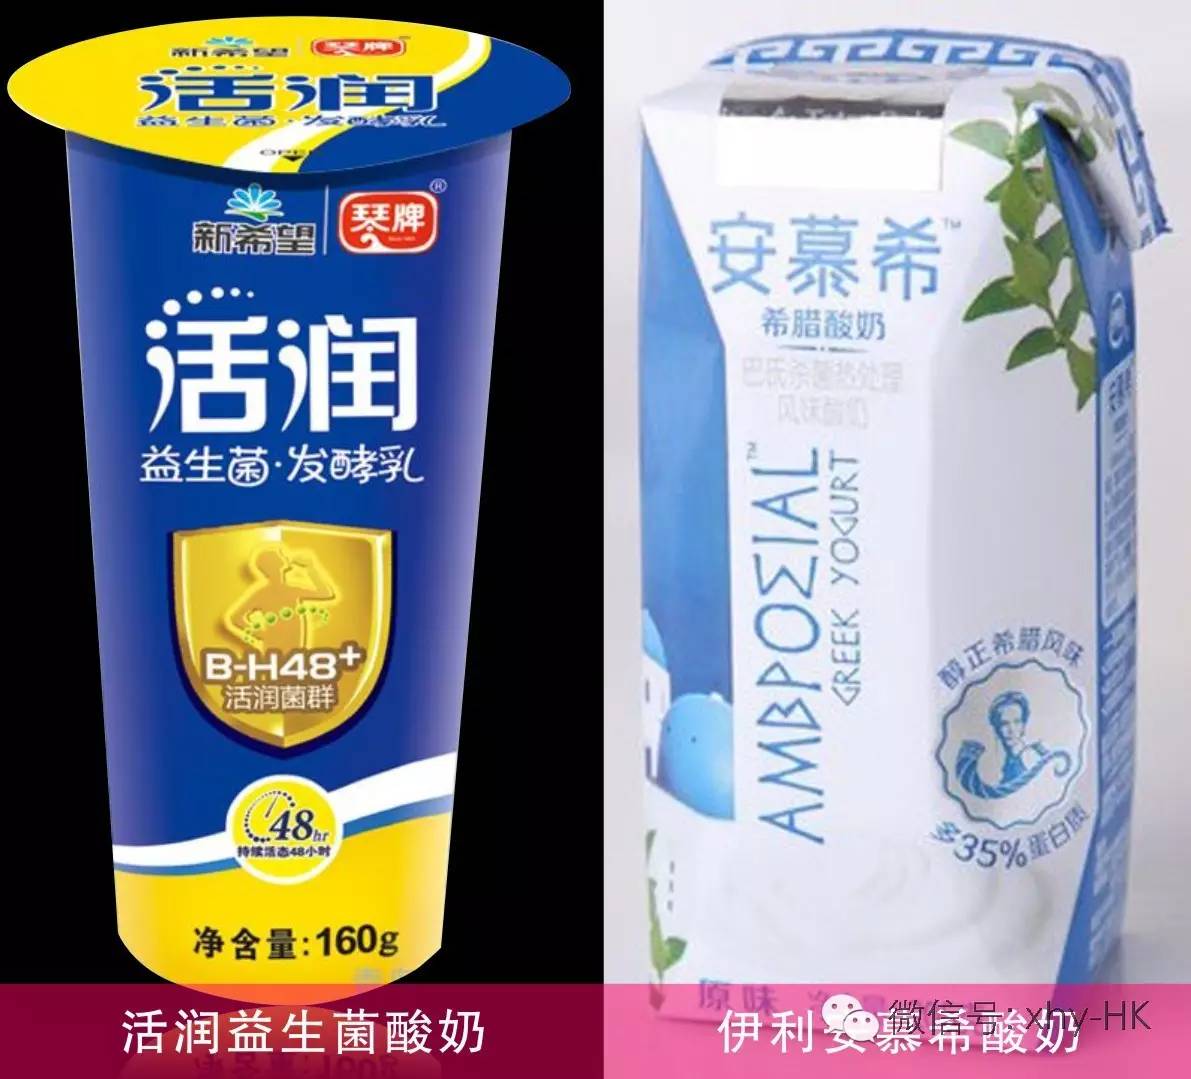 一定要使用益生菌酸奶调配套装产品,选择酸奶品牌(伊利安慕希酸奶